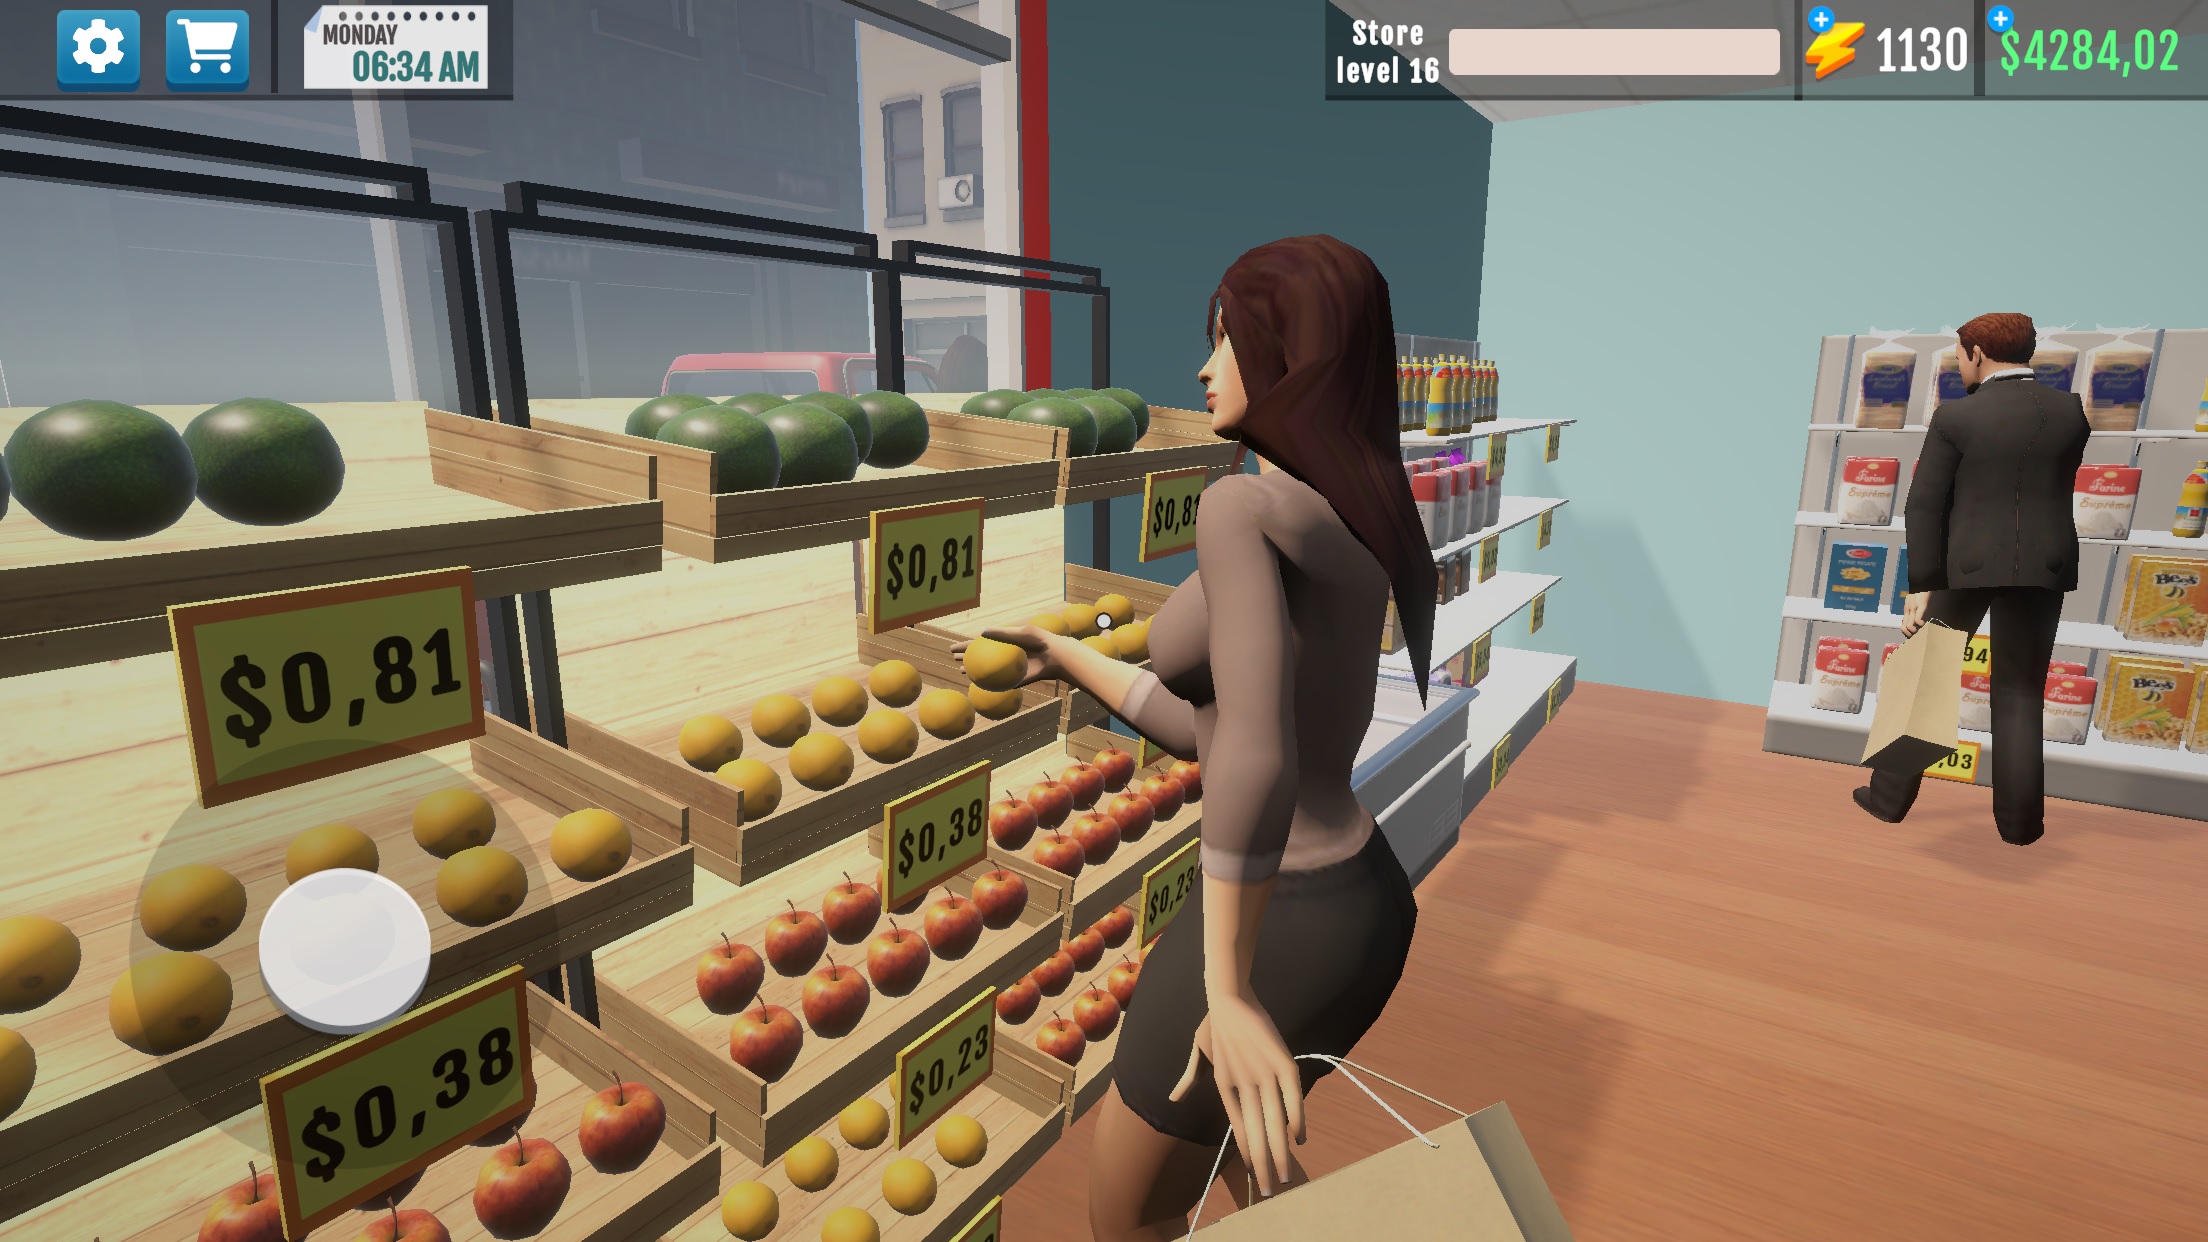 Supermercado Gerente Simulador é um dos melhores clones de Supermarket Simulator para Android